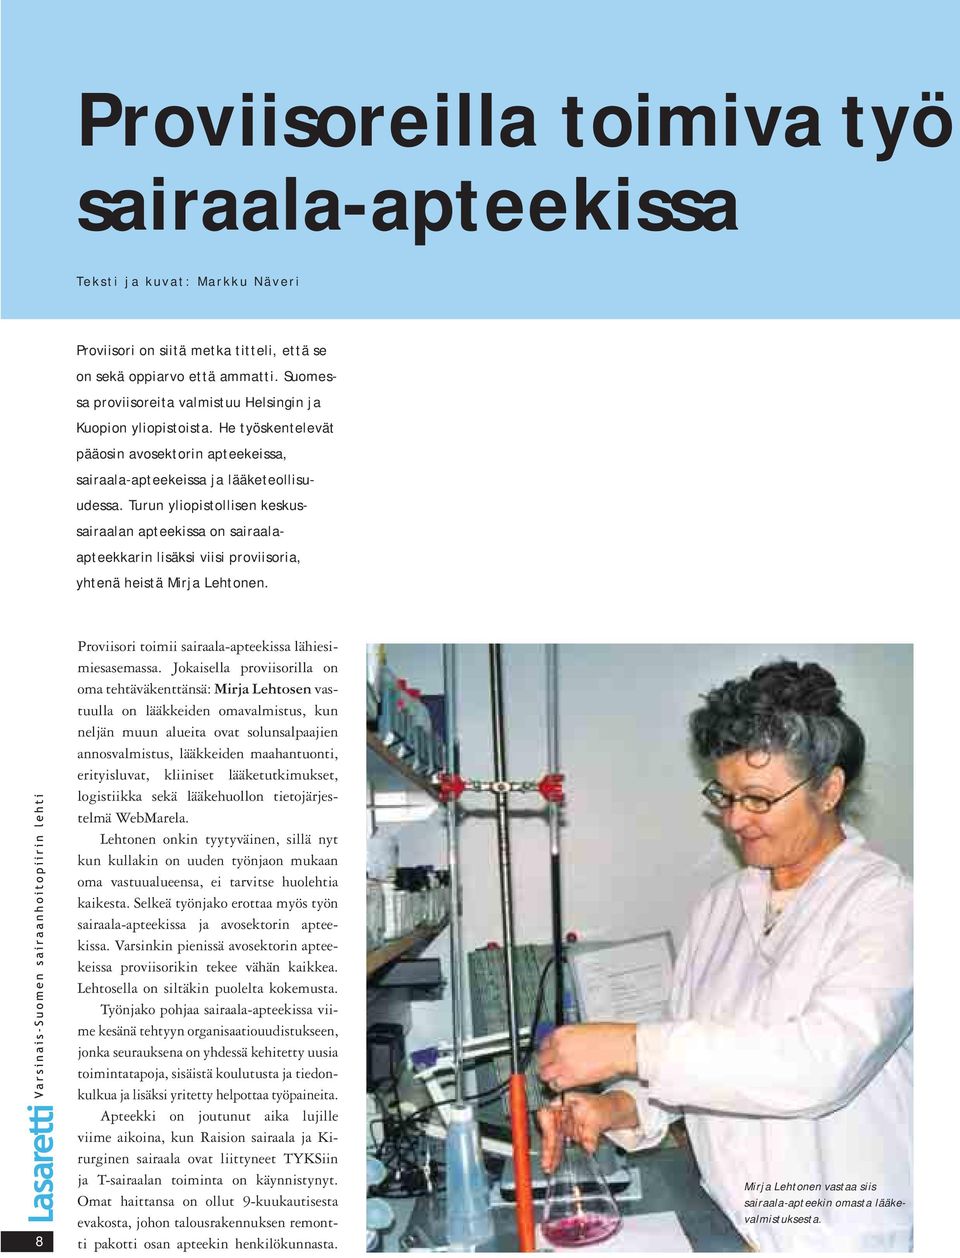 Turun yliopistollisen keskussairaalan apteekissa on sairaalaapteekkarin lisäksi viisi proviisoria, yhtenä heistä Mirja Lehtonen. 8 Proviisori toimii sairaala-apteekissa lähiesimiesasemassa.